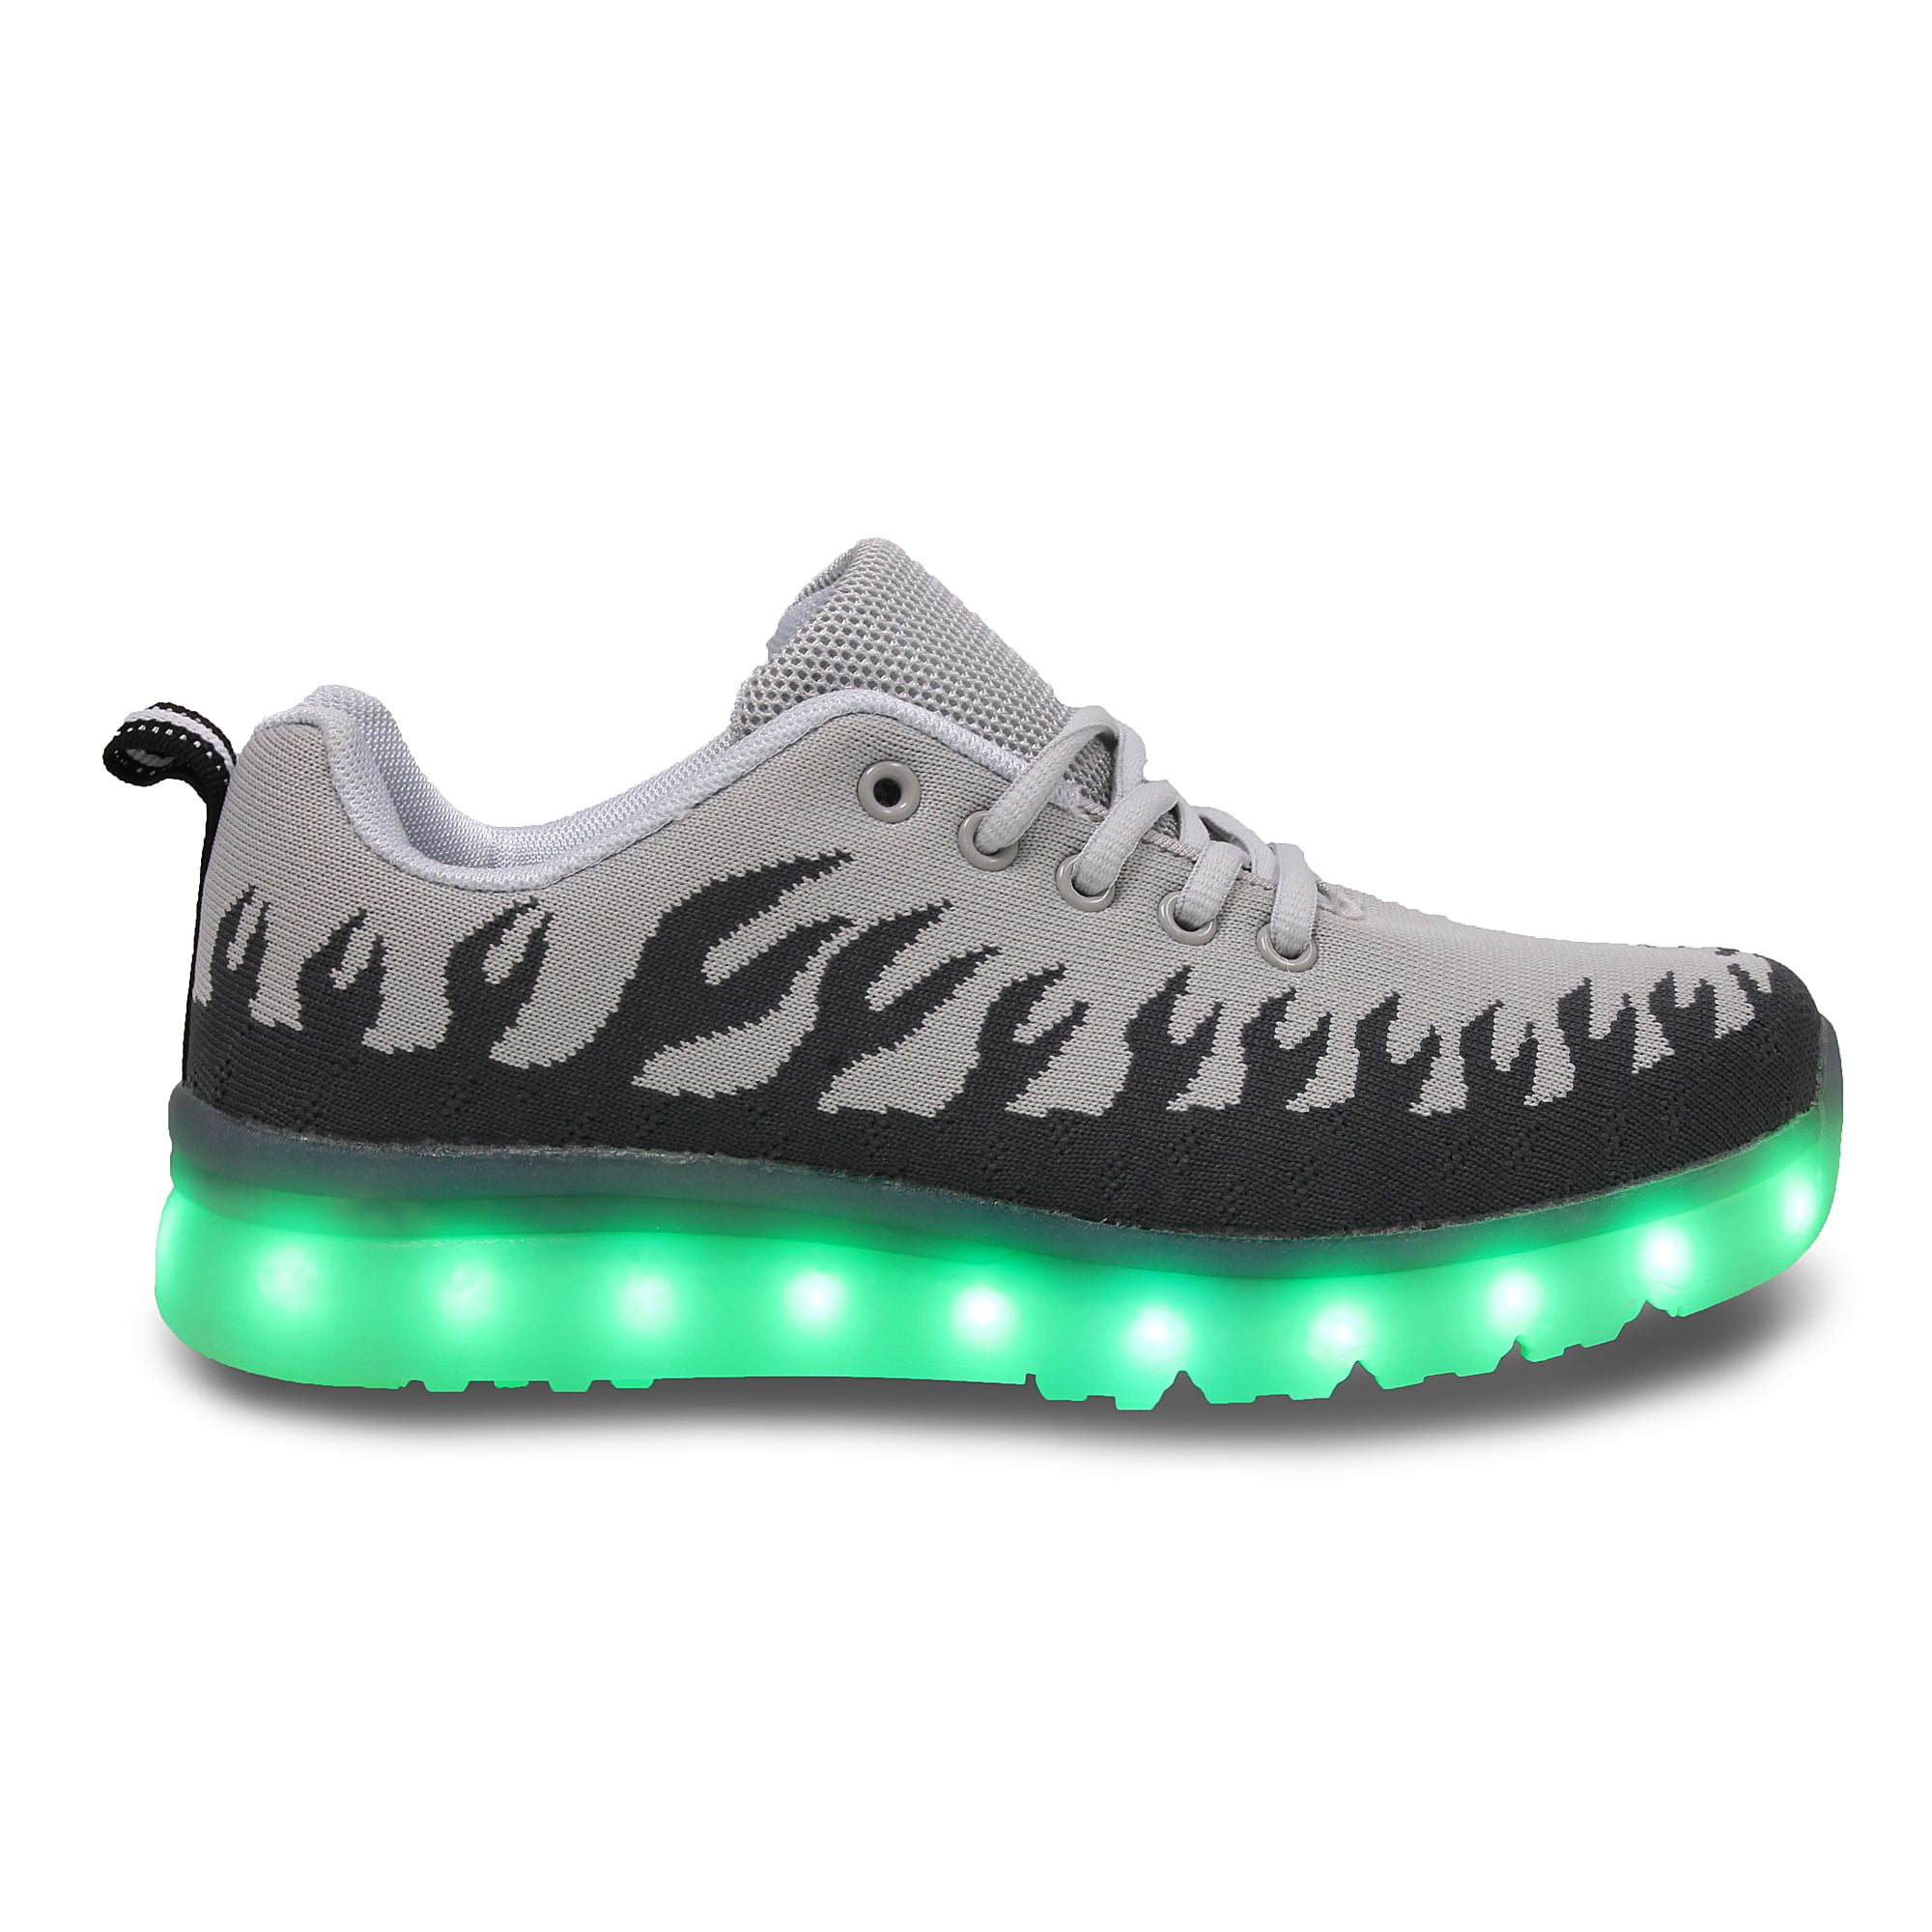 Green led shoes | Led shoes, Light up shoes, Light up sneakers